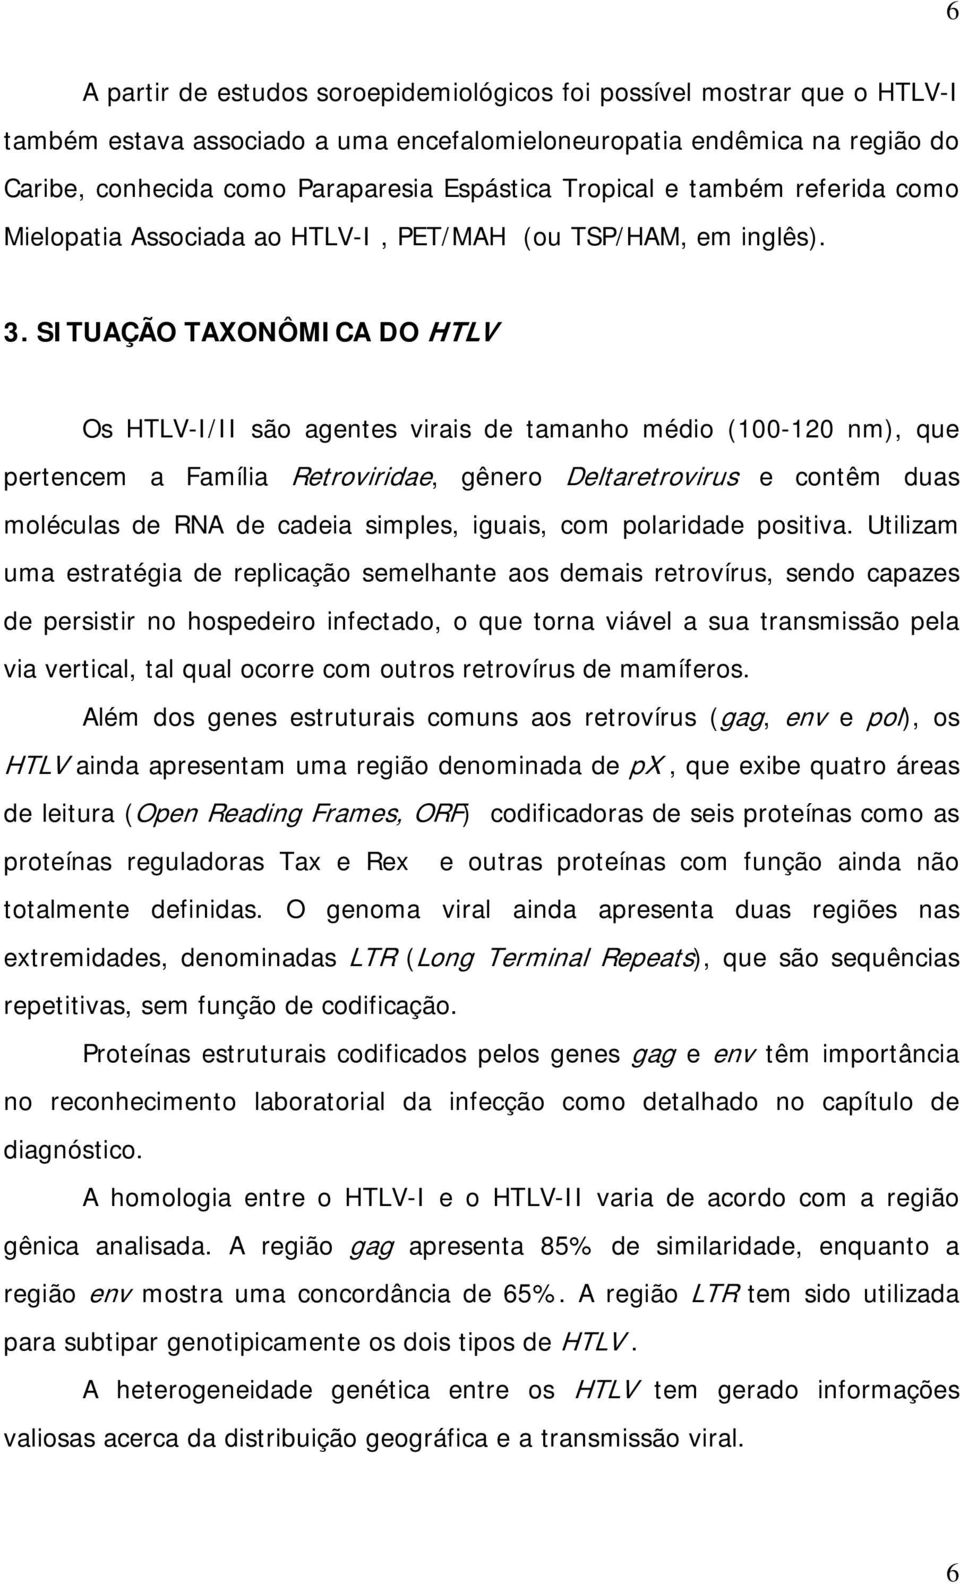 SITUAÇÃO TAXONÔMICA DO HTLV Os HTLV-I/II são agentes virais de tamanho médio (100-120 nm), que pertencem a Família Retroviridae, gênero Deltaretrovirus e contêm duas moléculas de RNA de cadeia